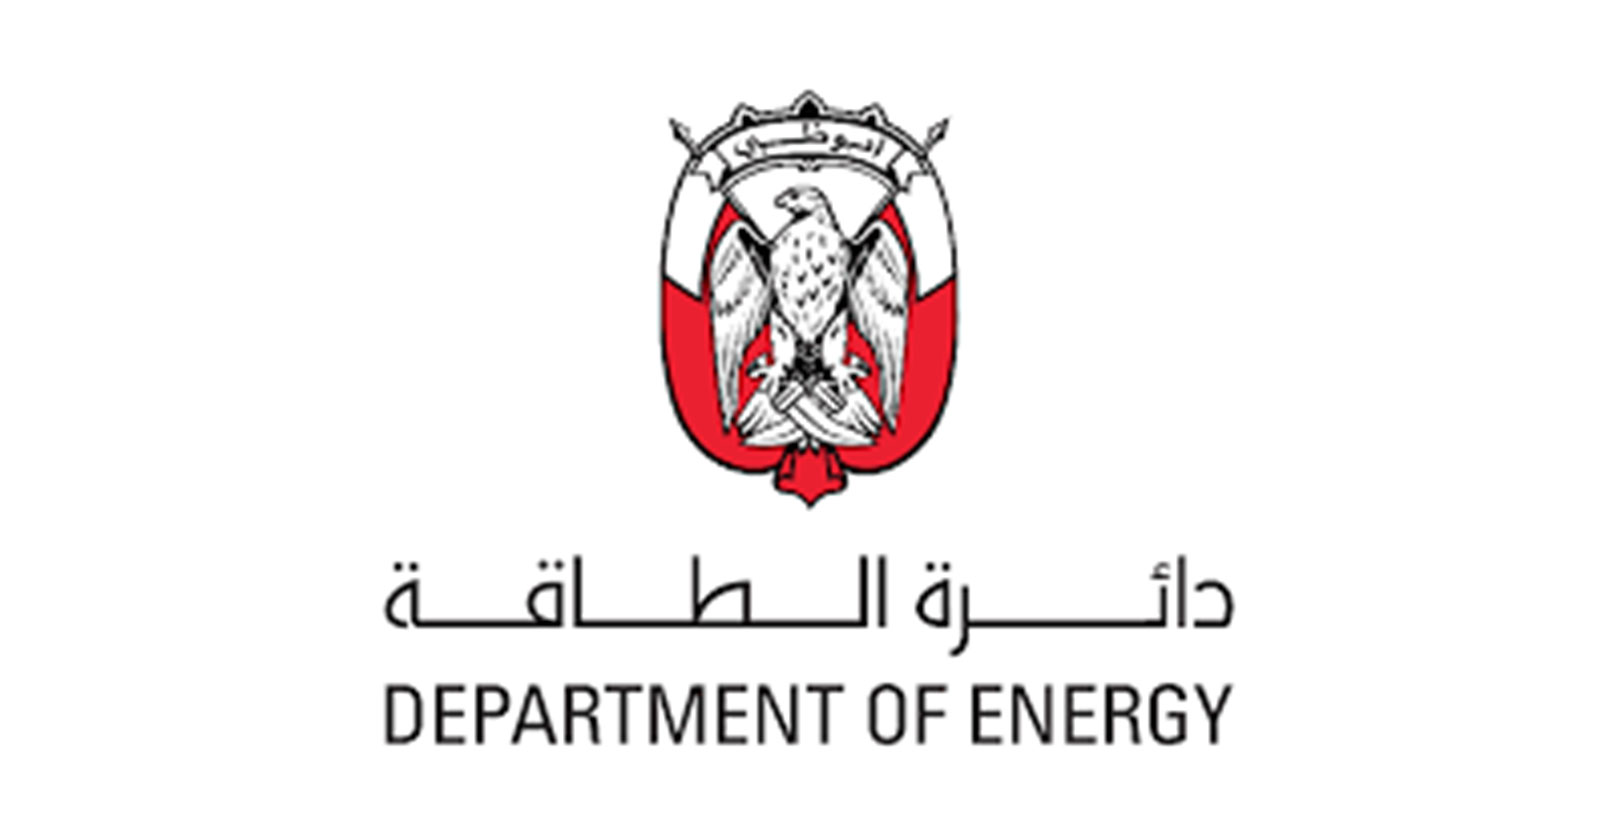 Abu Dhabi Department of Energy (ADDOE)